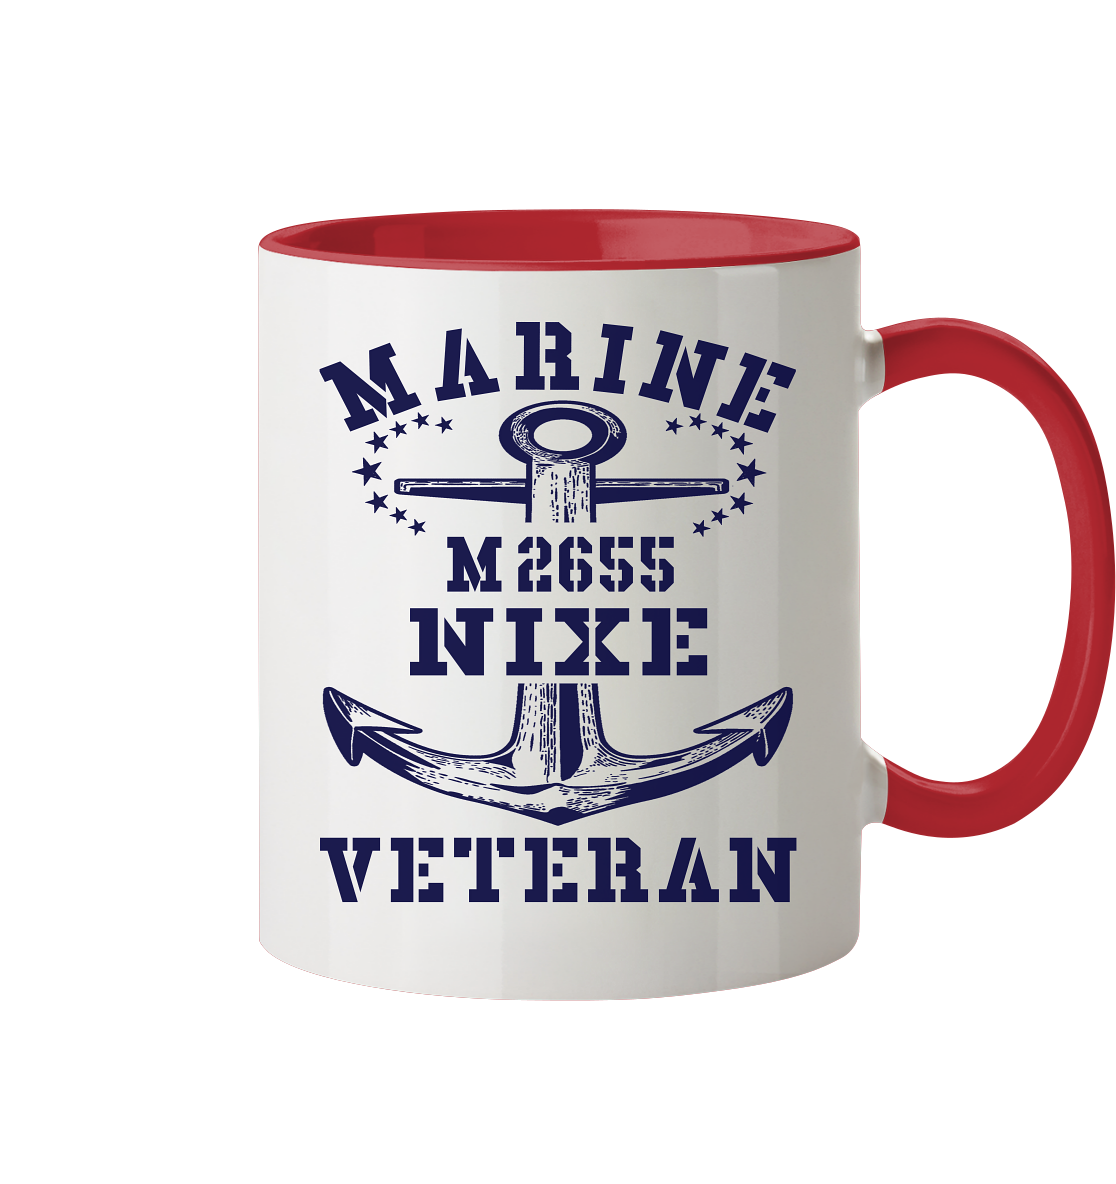 BiMi M2655 NIXE Marine Veteran - Tasse zweifarbig